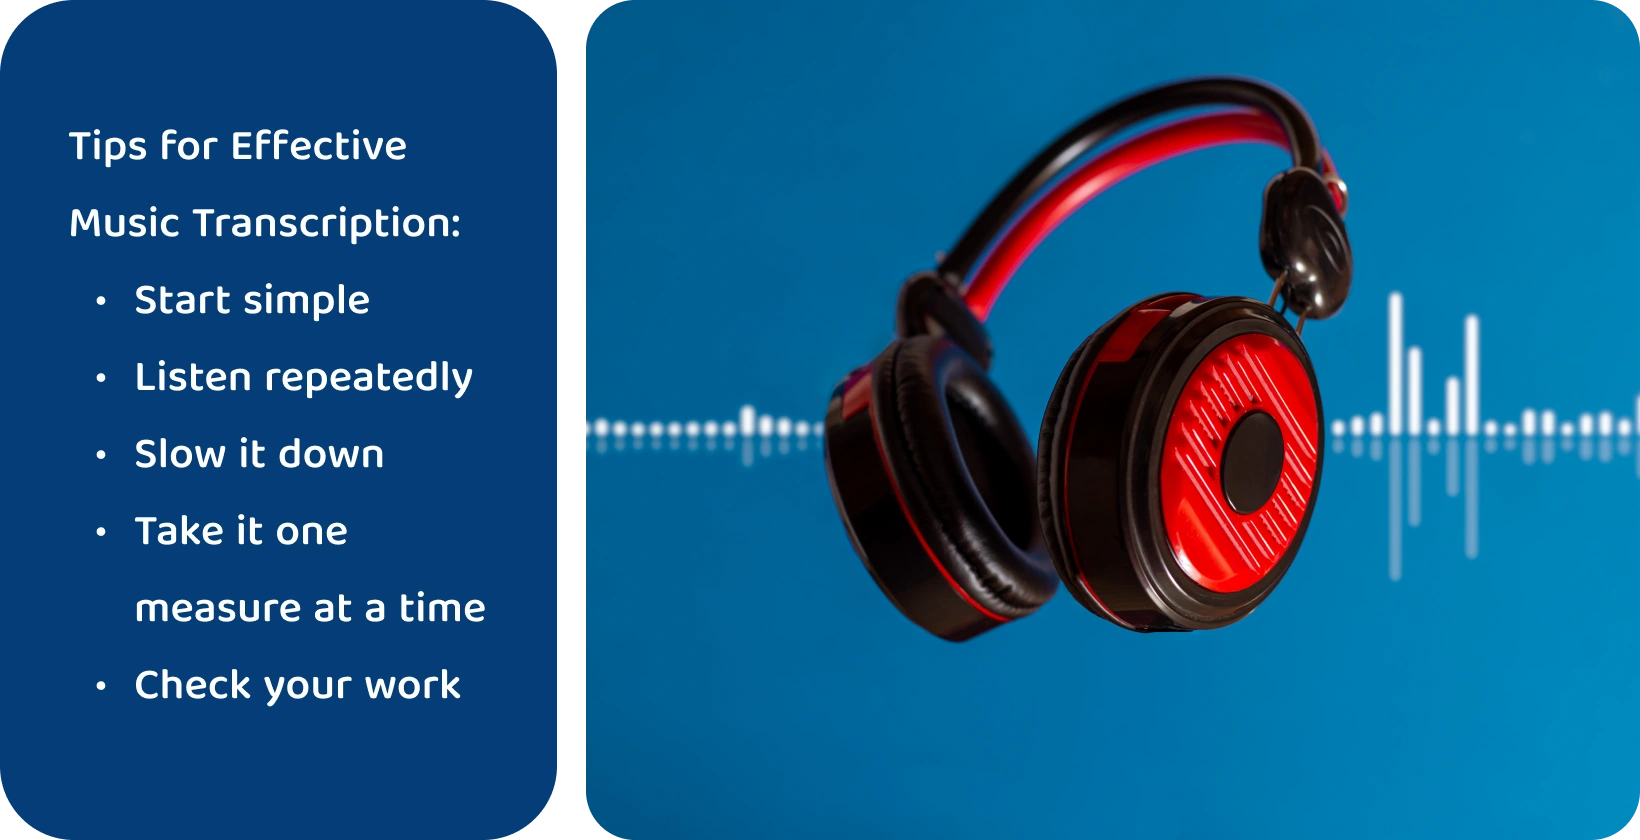 Ακουστικά σε φόντο κυματομορφής, που αντιπροσωπεύουν εργαλεία για την ενίσχυση της μεταγραφής μουσικής μέσω εστιασμένης και επαναλαμβανόμενης ακρόασης.